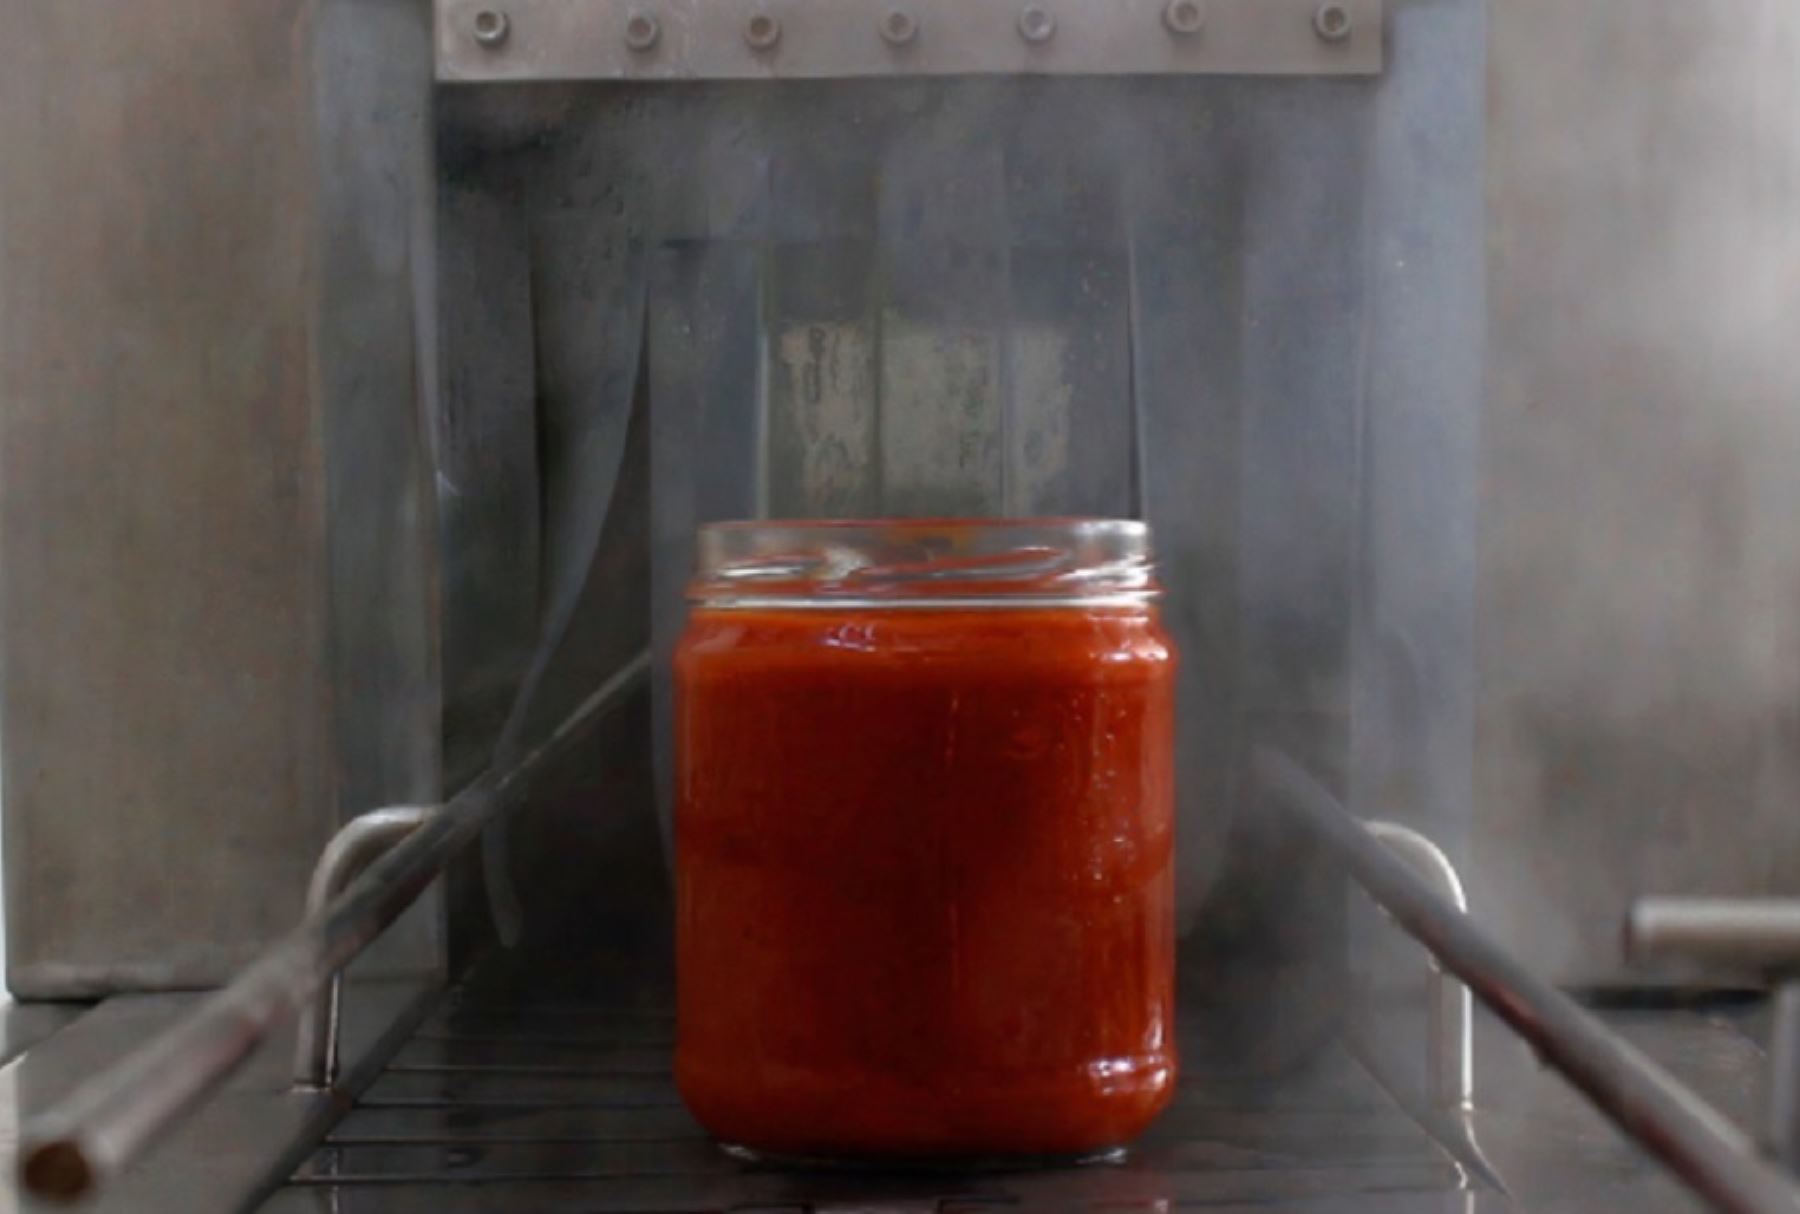 El CITE Agroindustrial Chavimochic ha desarrollado una salsa de tomate haciendo uso de materias primas e insumos orgánicos, baja en sodio, azúcar y grasas trans.